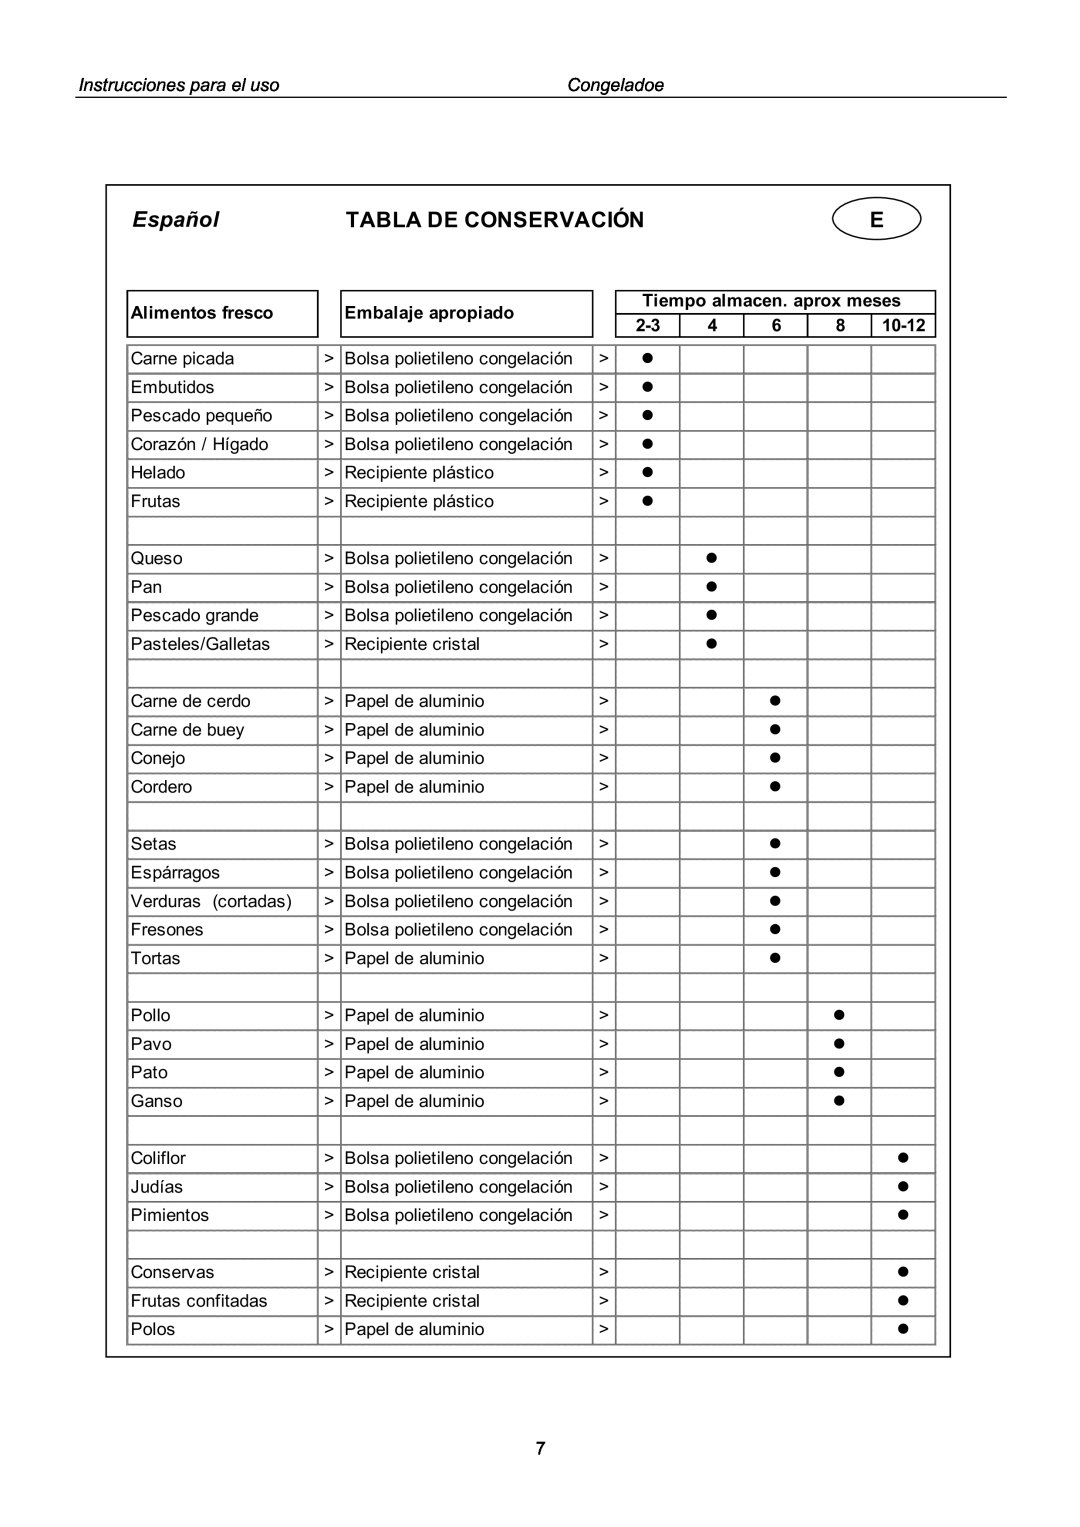 Haier BD-143GAA KX manual Español, Tabla De Conservación, Instrucciones para el uso, Congeladoe, Alimentos fresco, 10-12 